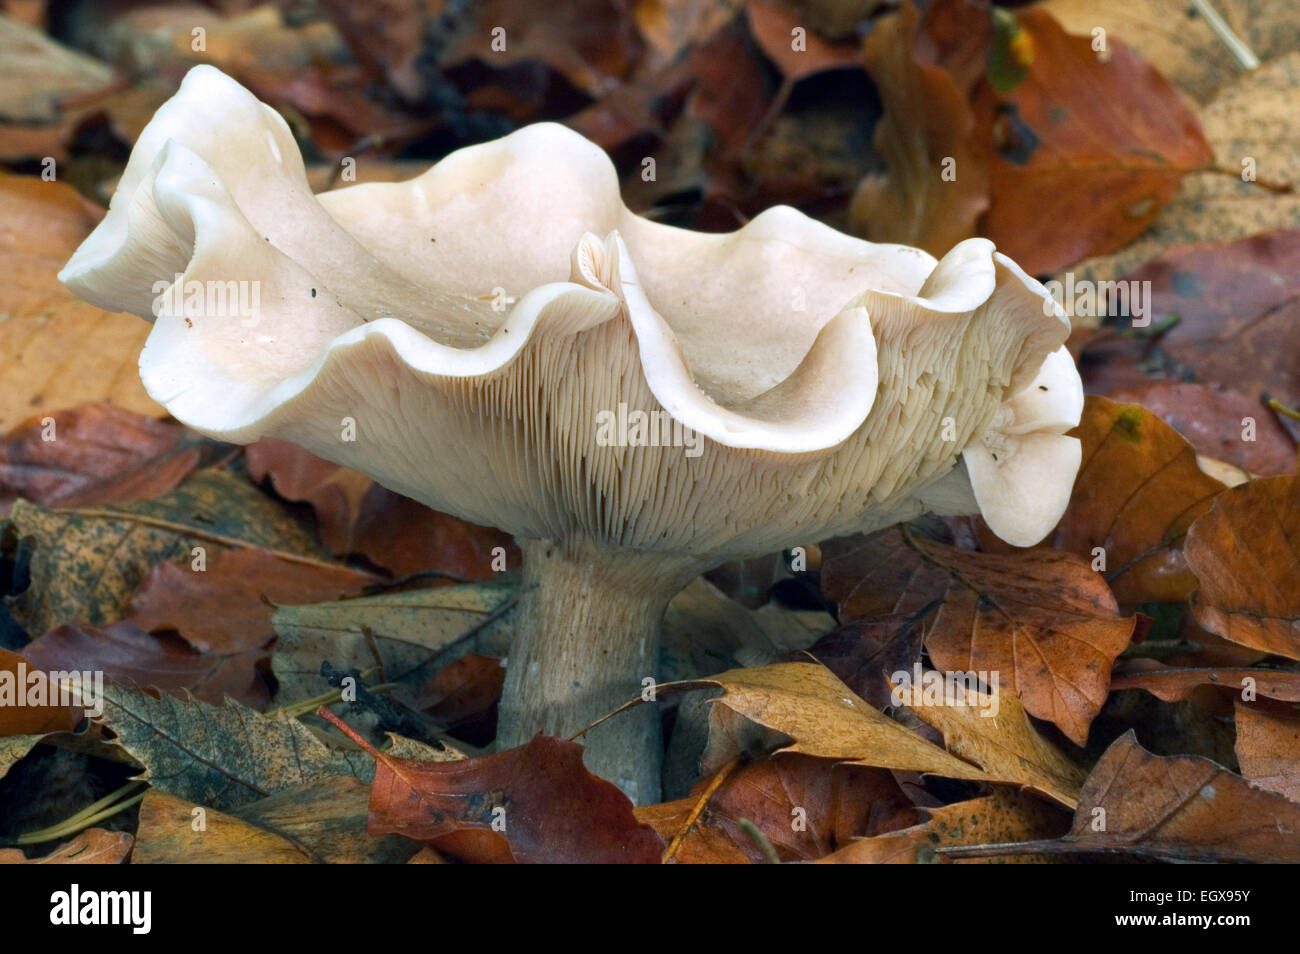 Fleecy milkcap fungus (Lactifluus vellereus / Lactarius vellereus) among autumn leaves Stock Photo